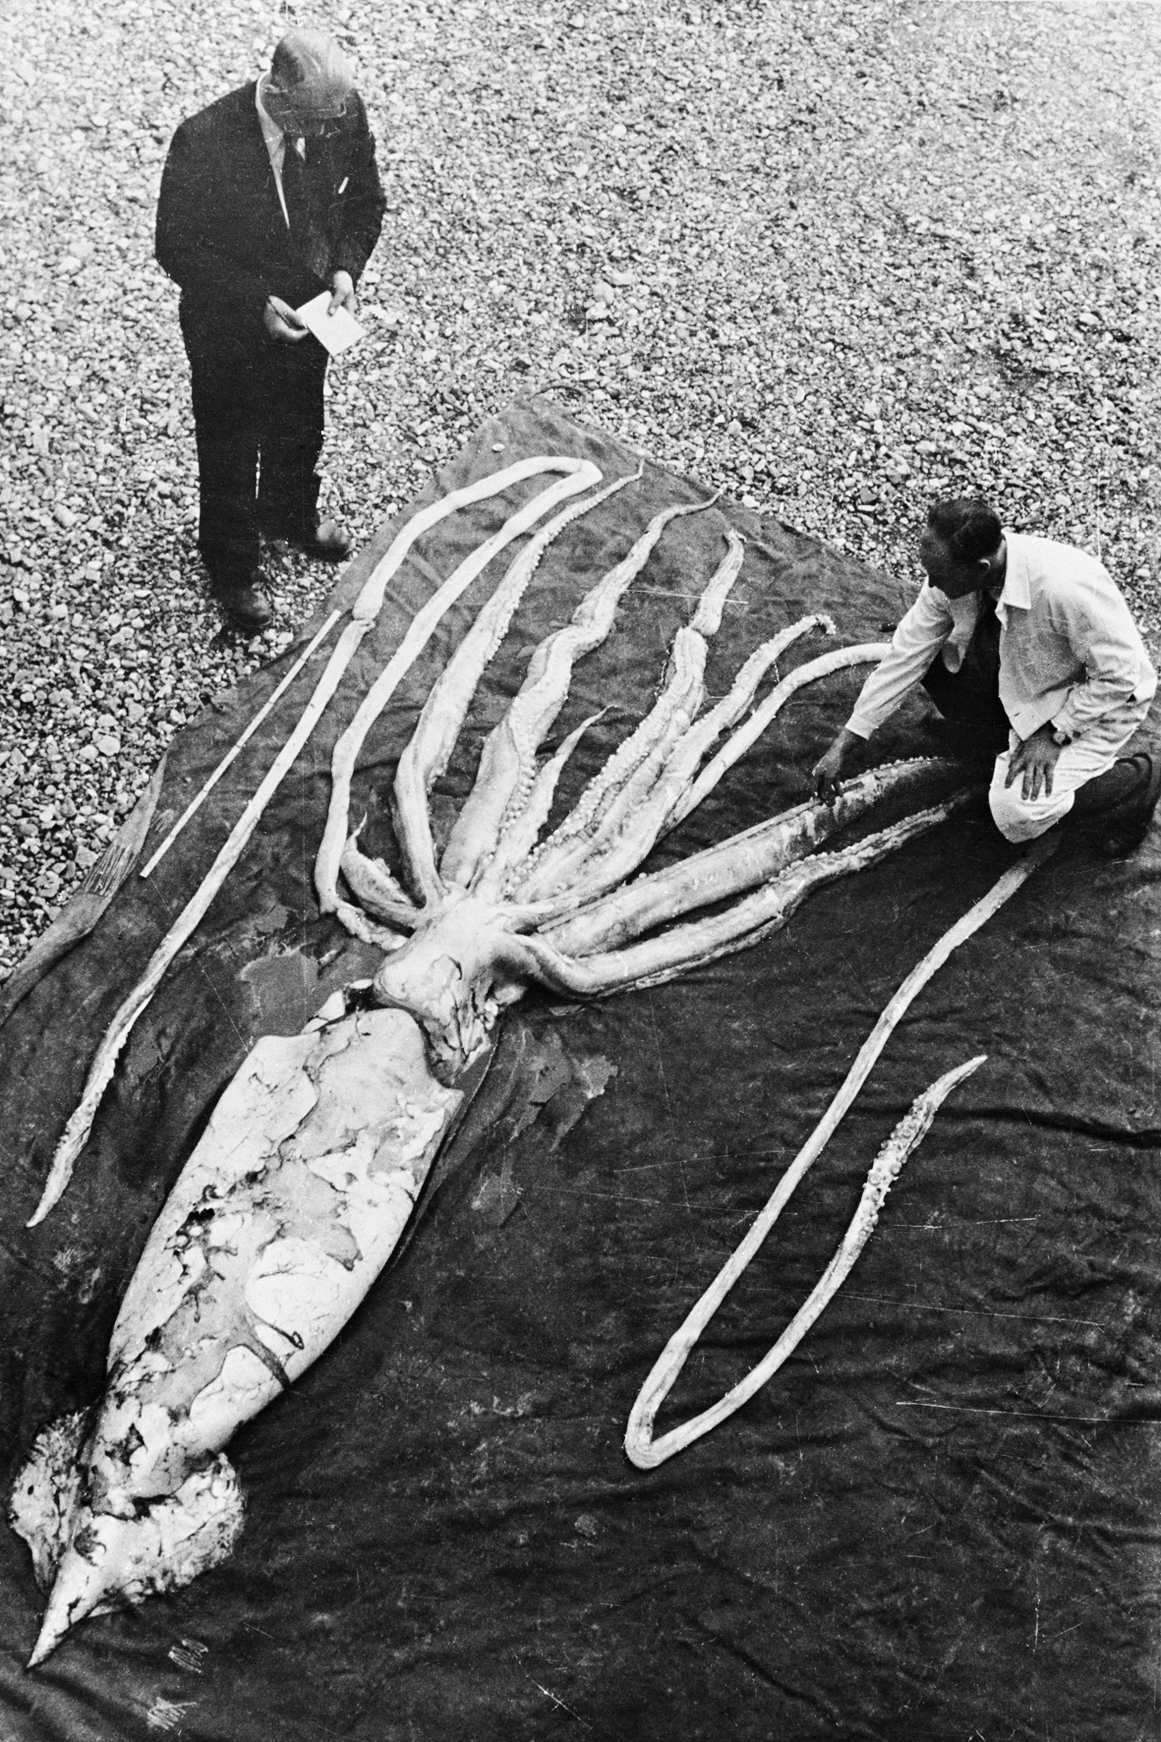 Profesori Erlings Sivertsens un Sveins Haftorns mēra milzu kalmāru, kas atrasts Ranheimā Tronheimā 2. gada 1954. oktobrī. Eksemplāra (otrais lielākais galvkāju) kopējais garums tika izmērīts 9.2 metru garumā. NTNU Dabas vēstures un arheoloģijas muzejs / Wikimedia Commons